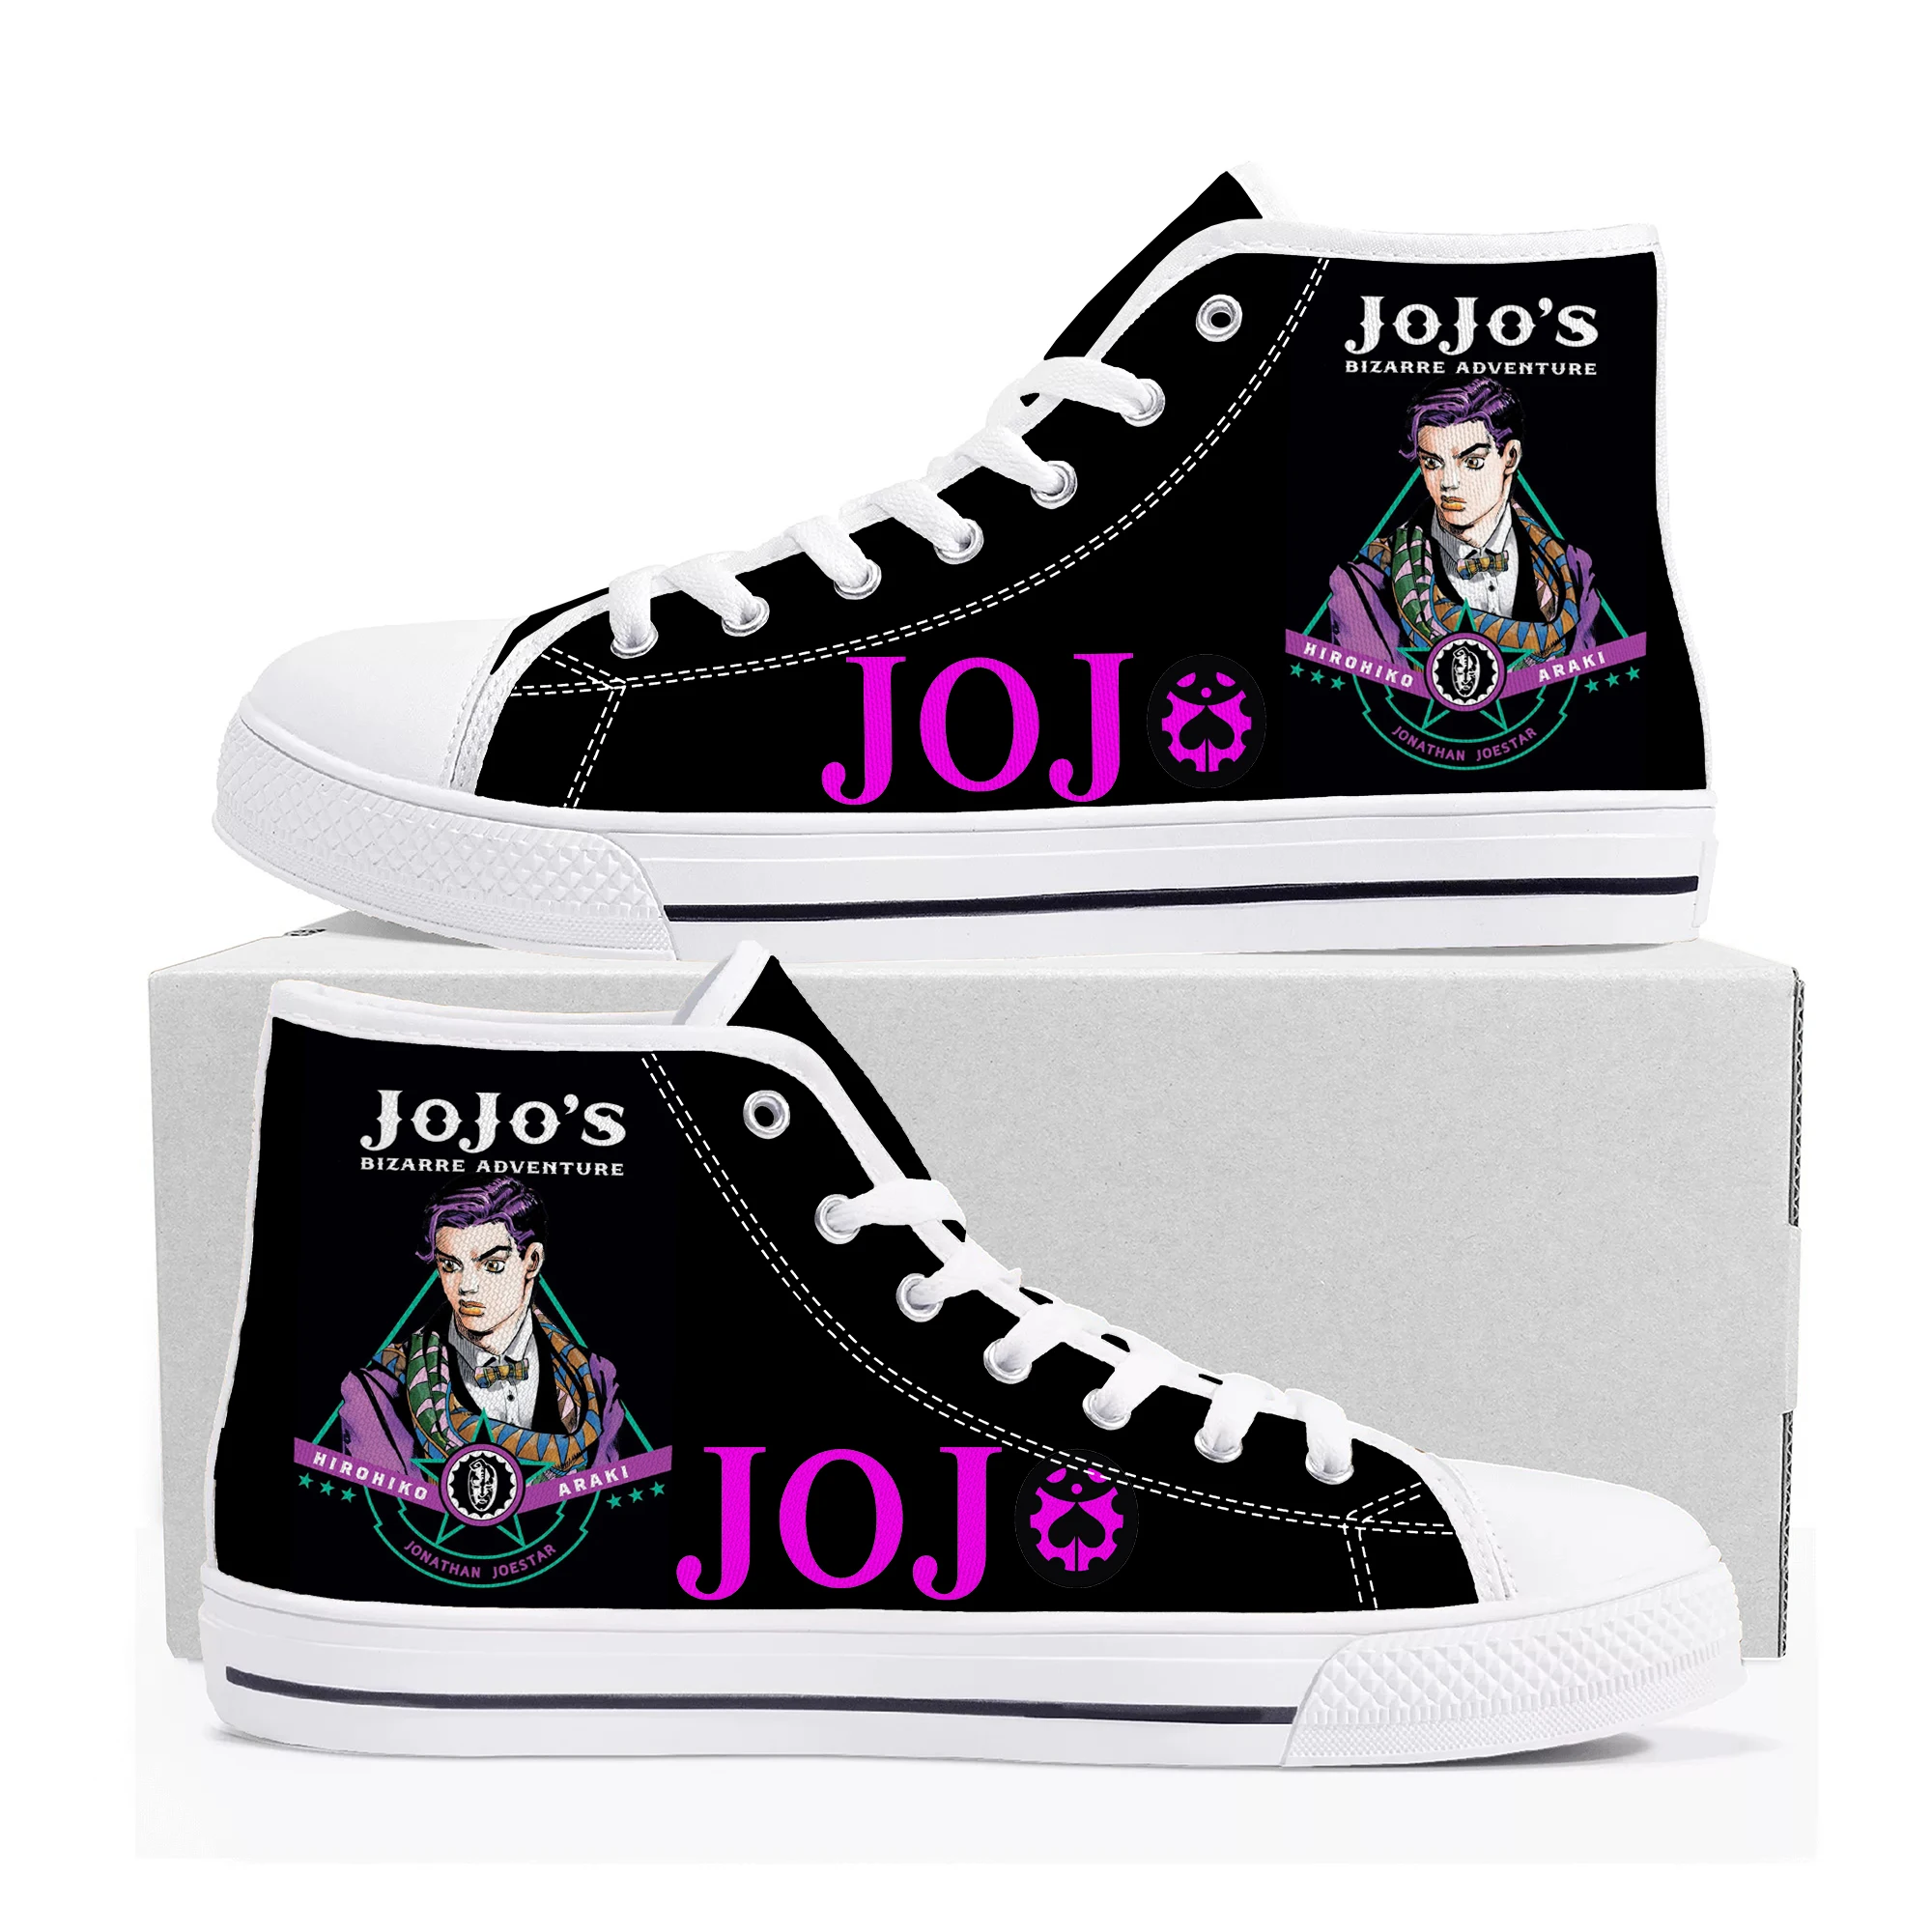 

Высокие кроссовки JoJo's странные приключения для мужчин и женщин, холщовые Сникеры для подростков, обувь на заказ для комиксов, манги, пар